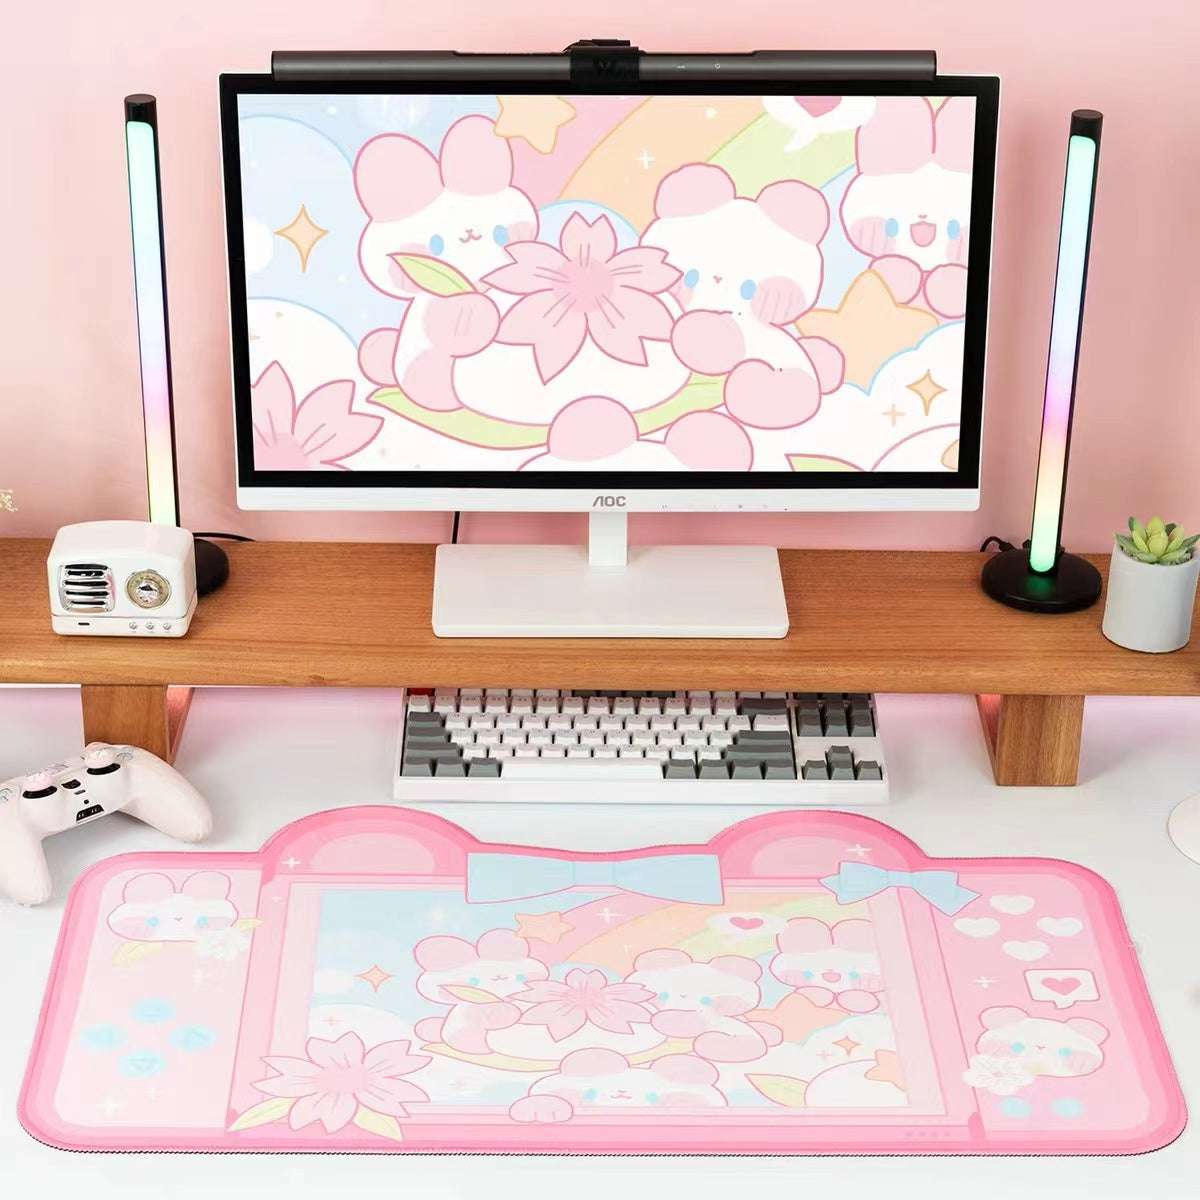 BlingKiyo Rainbow Bunny Large Mouse Pad / Desk Mat